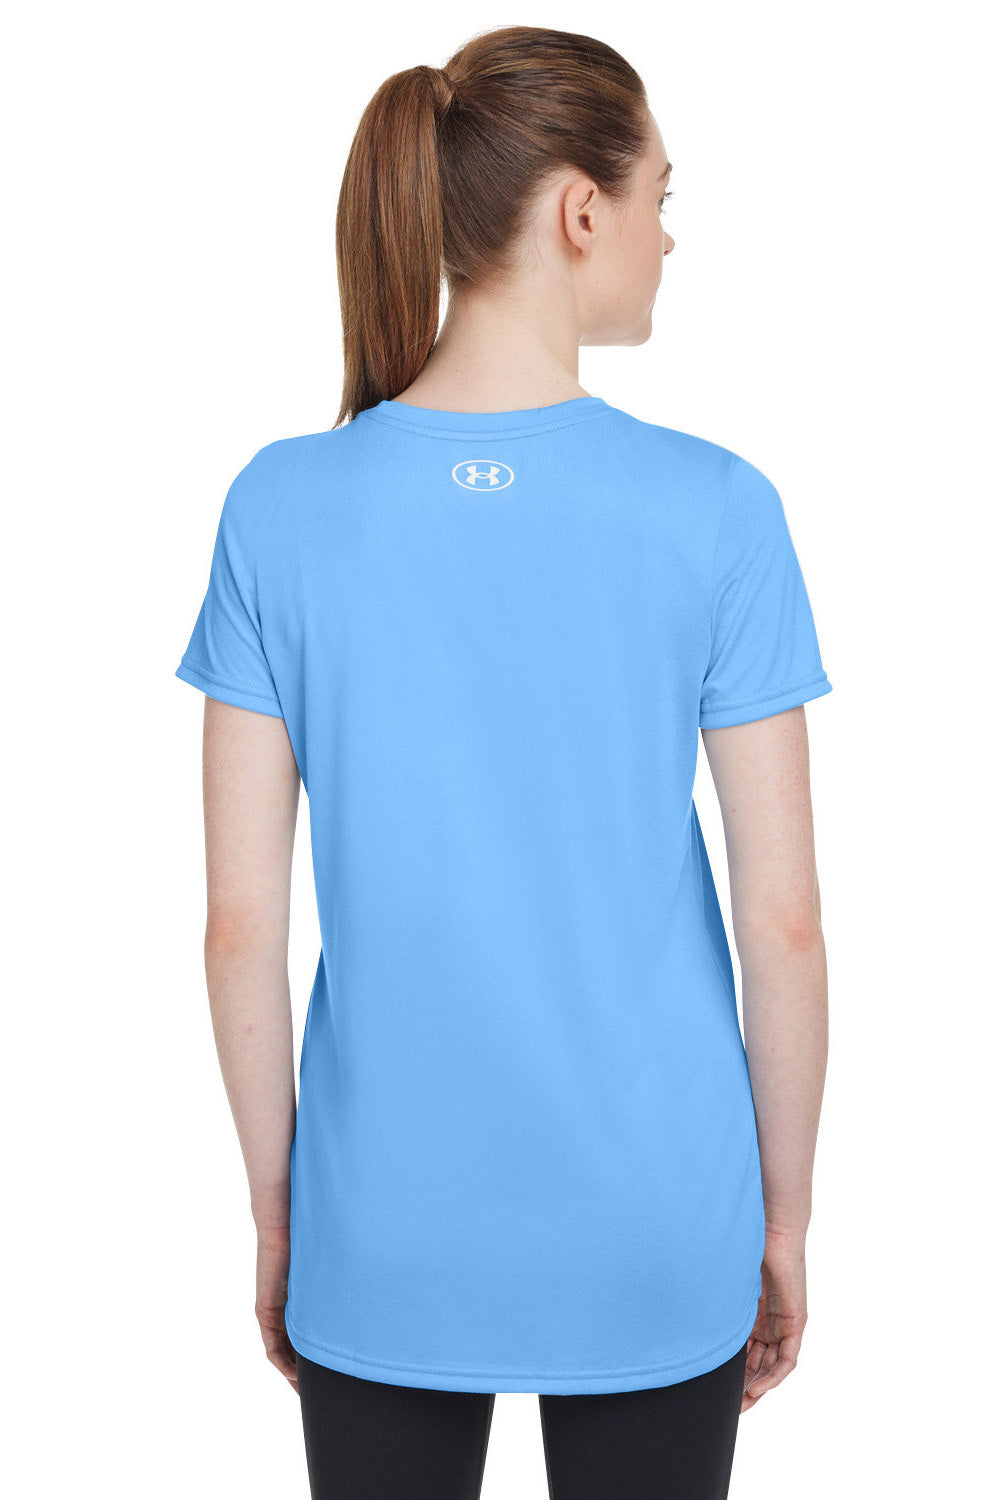 Under Armour 1376847 Womens Team Tech Moisture Wicking Short Sleeve Crewneck T-Shirt Carolina Blue Model Back